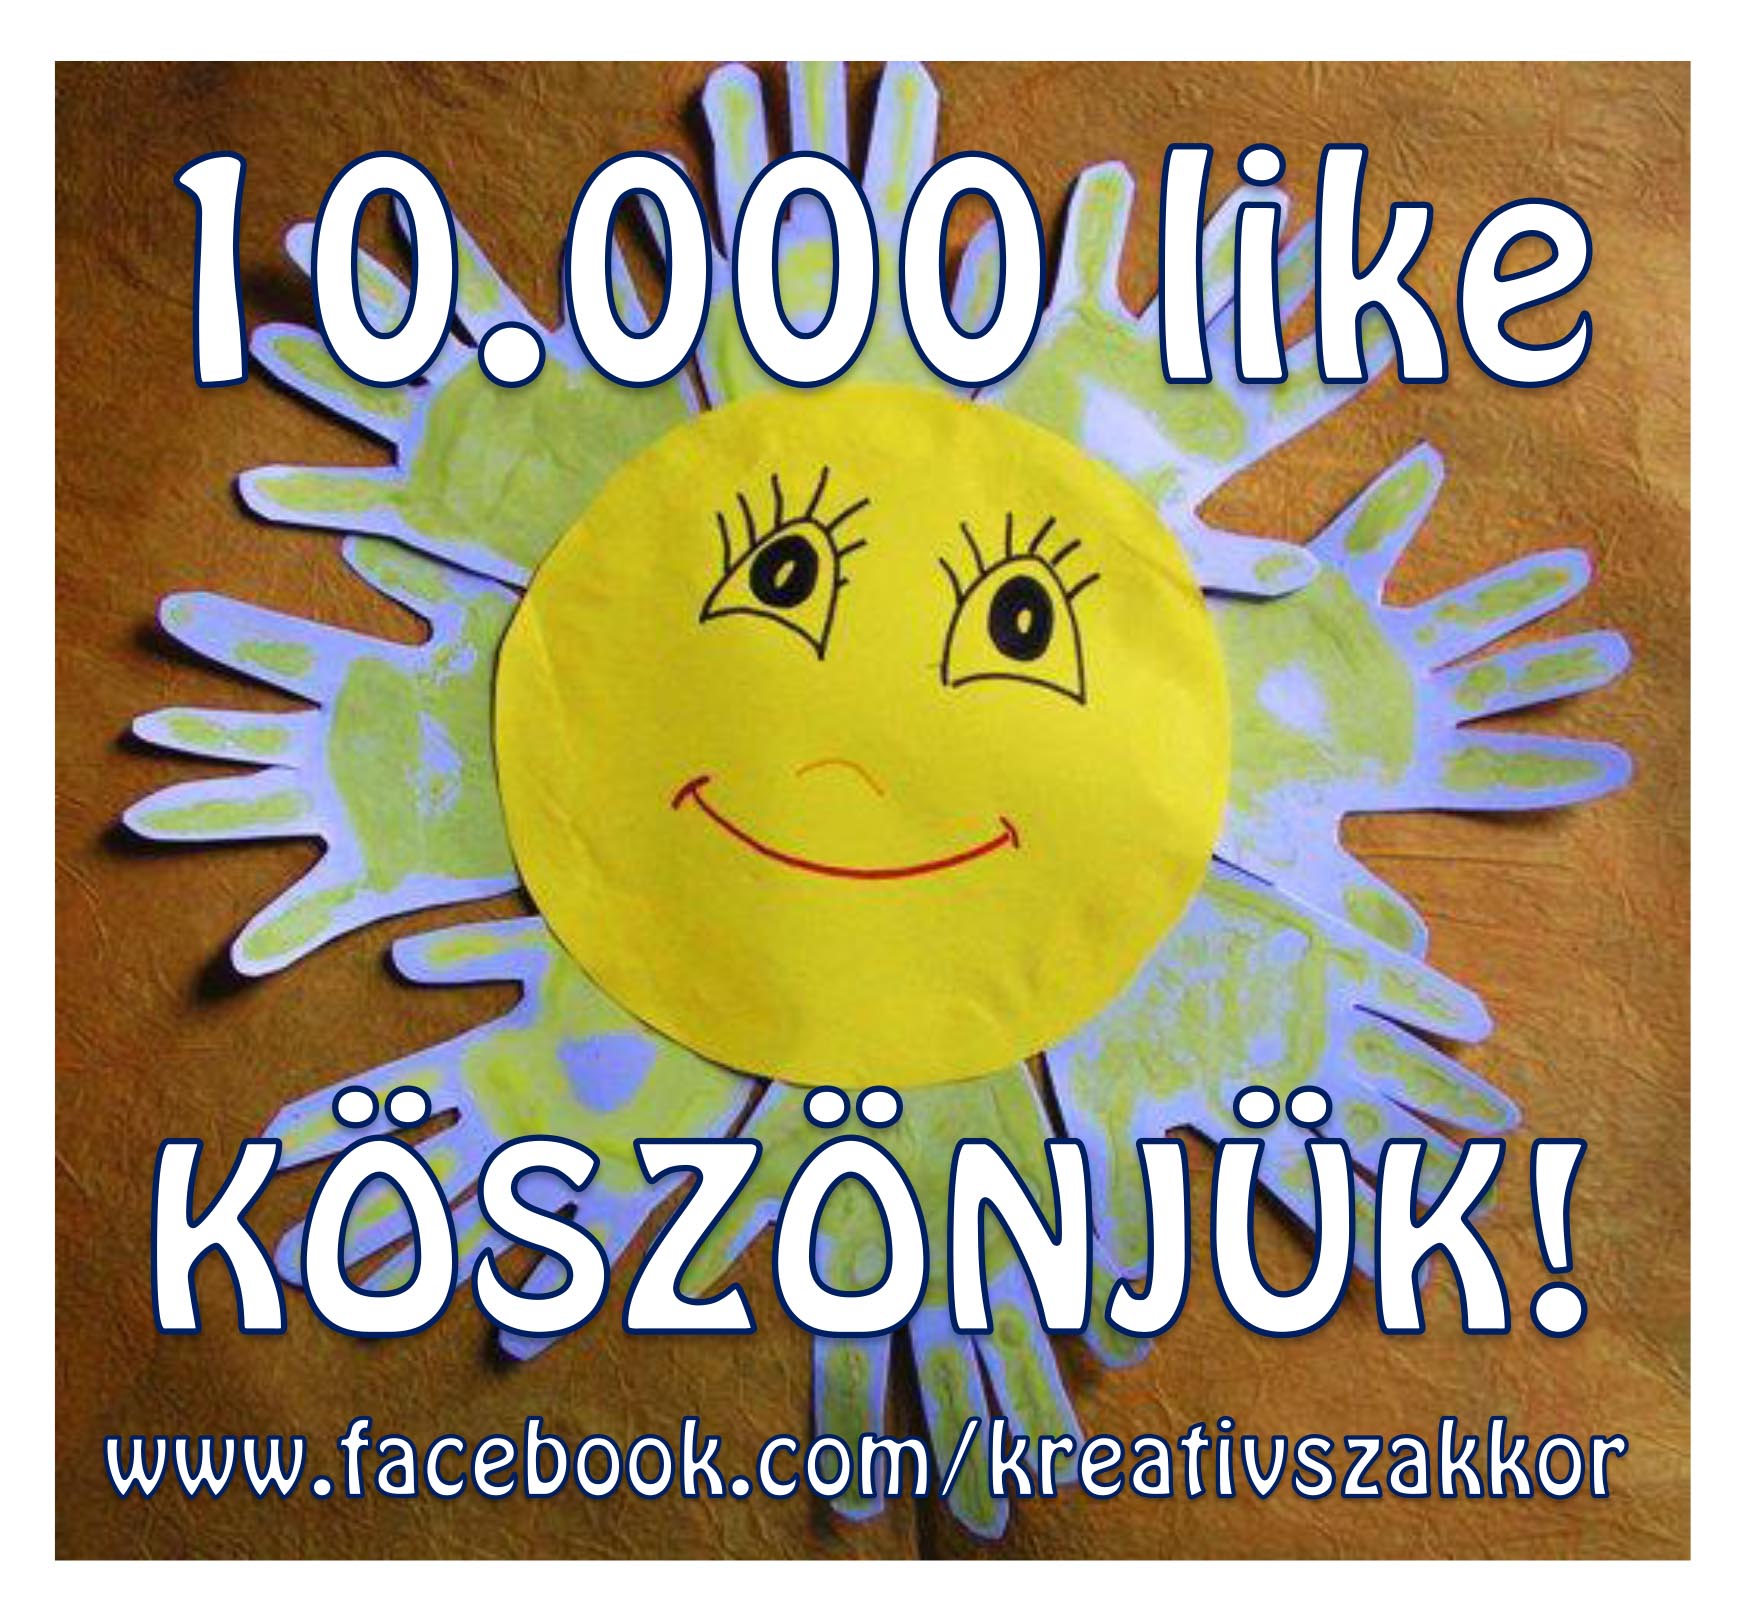 10_000_like_facebook.jpg